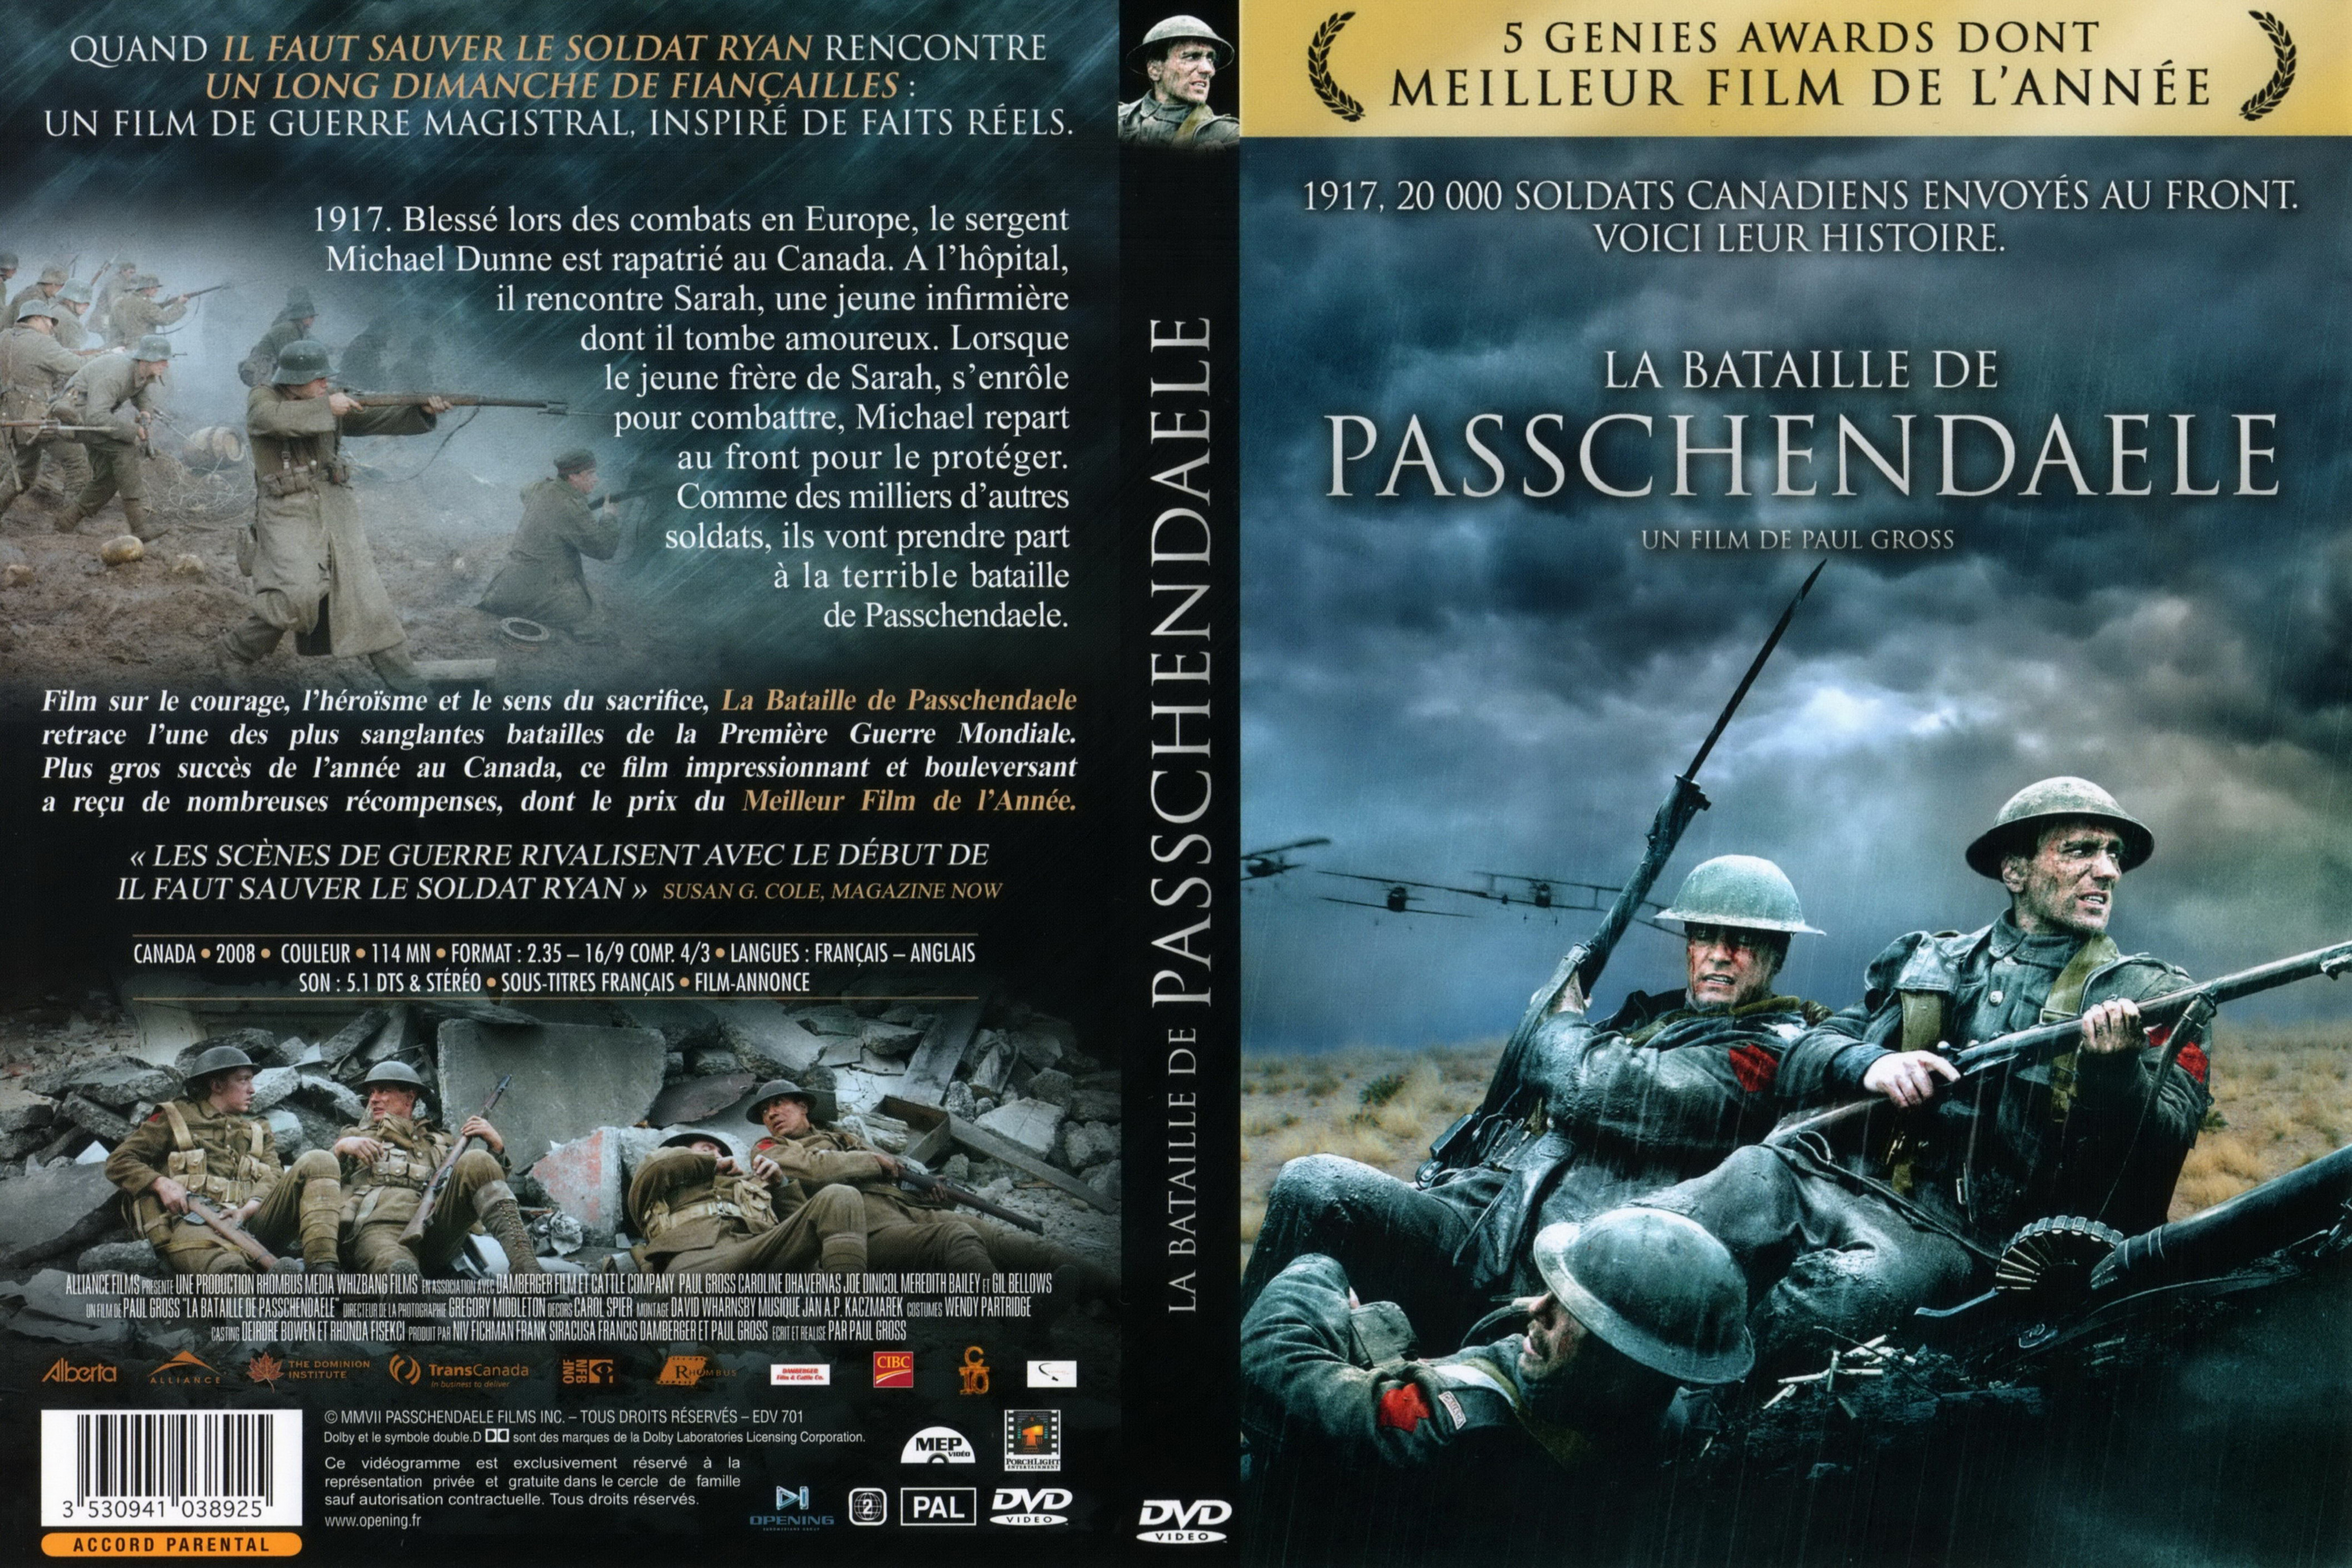 Jaquette DVD La bataille de Passchendaele